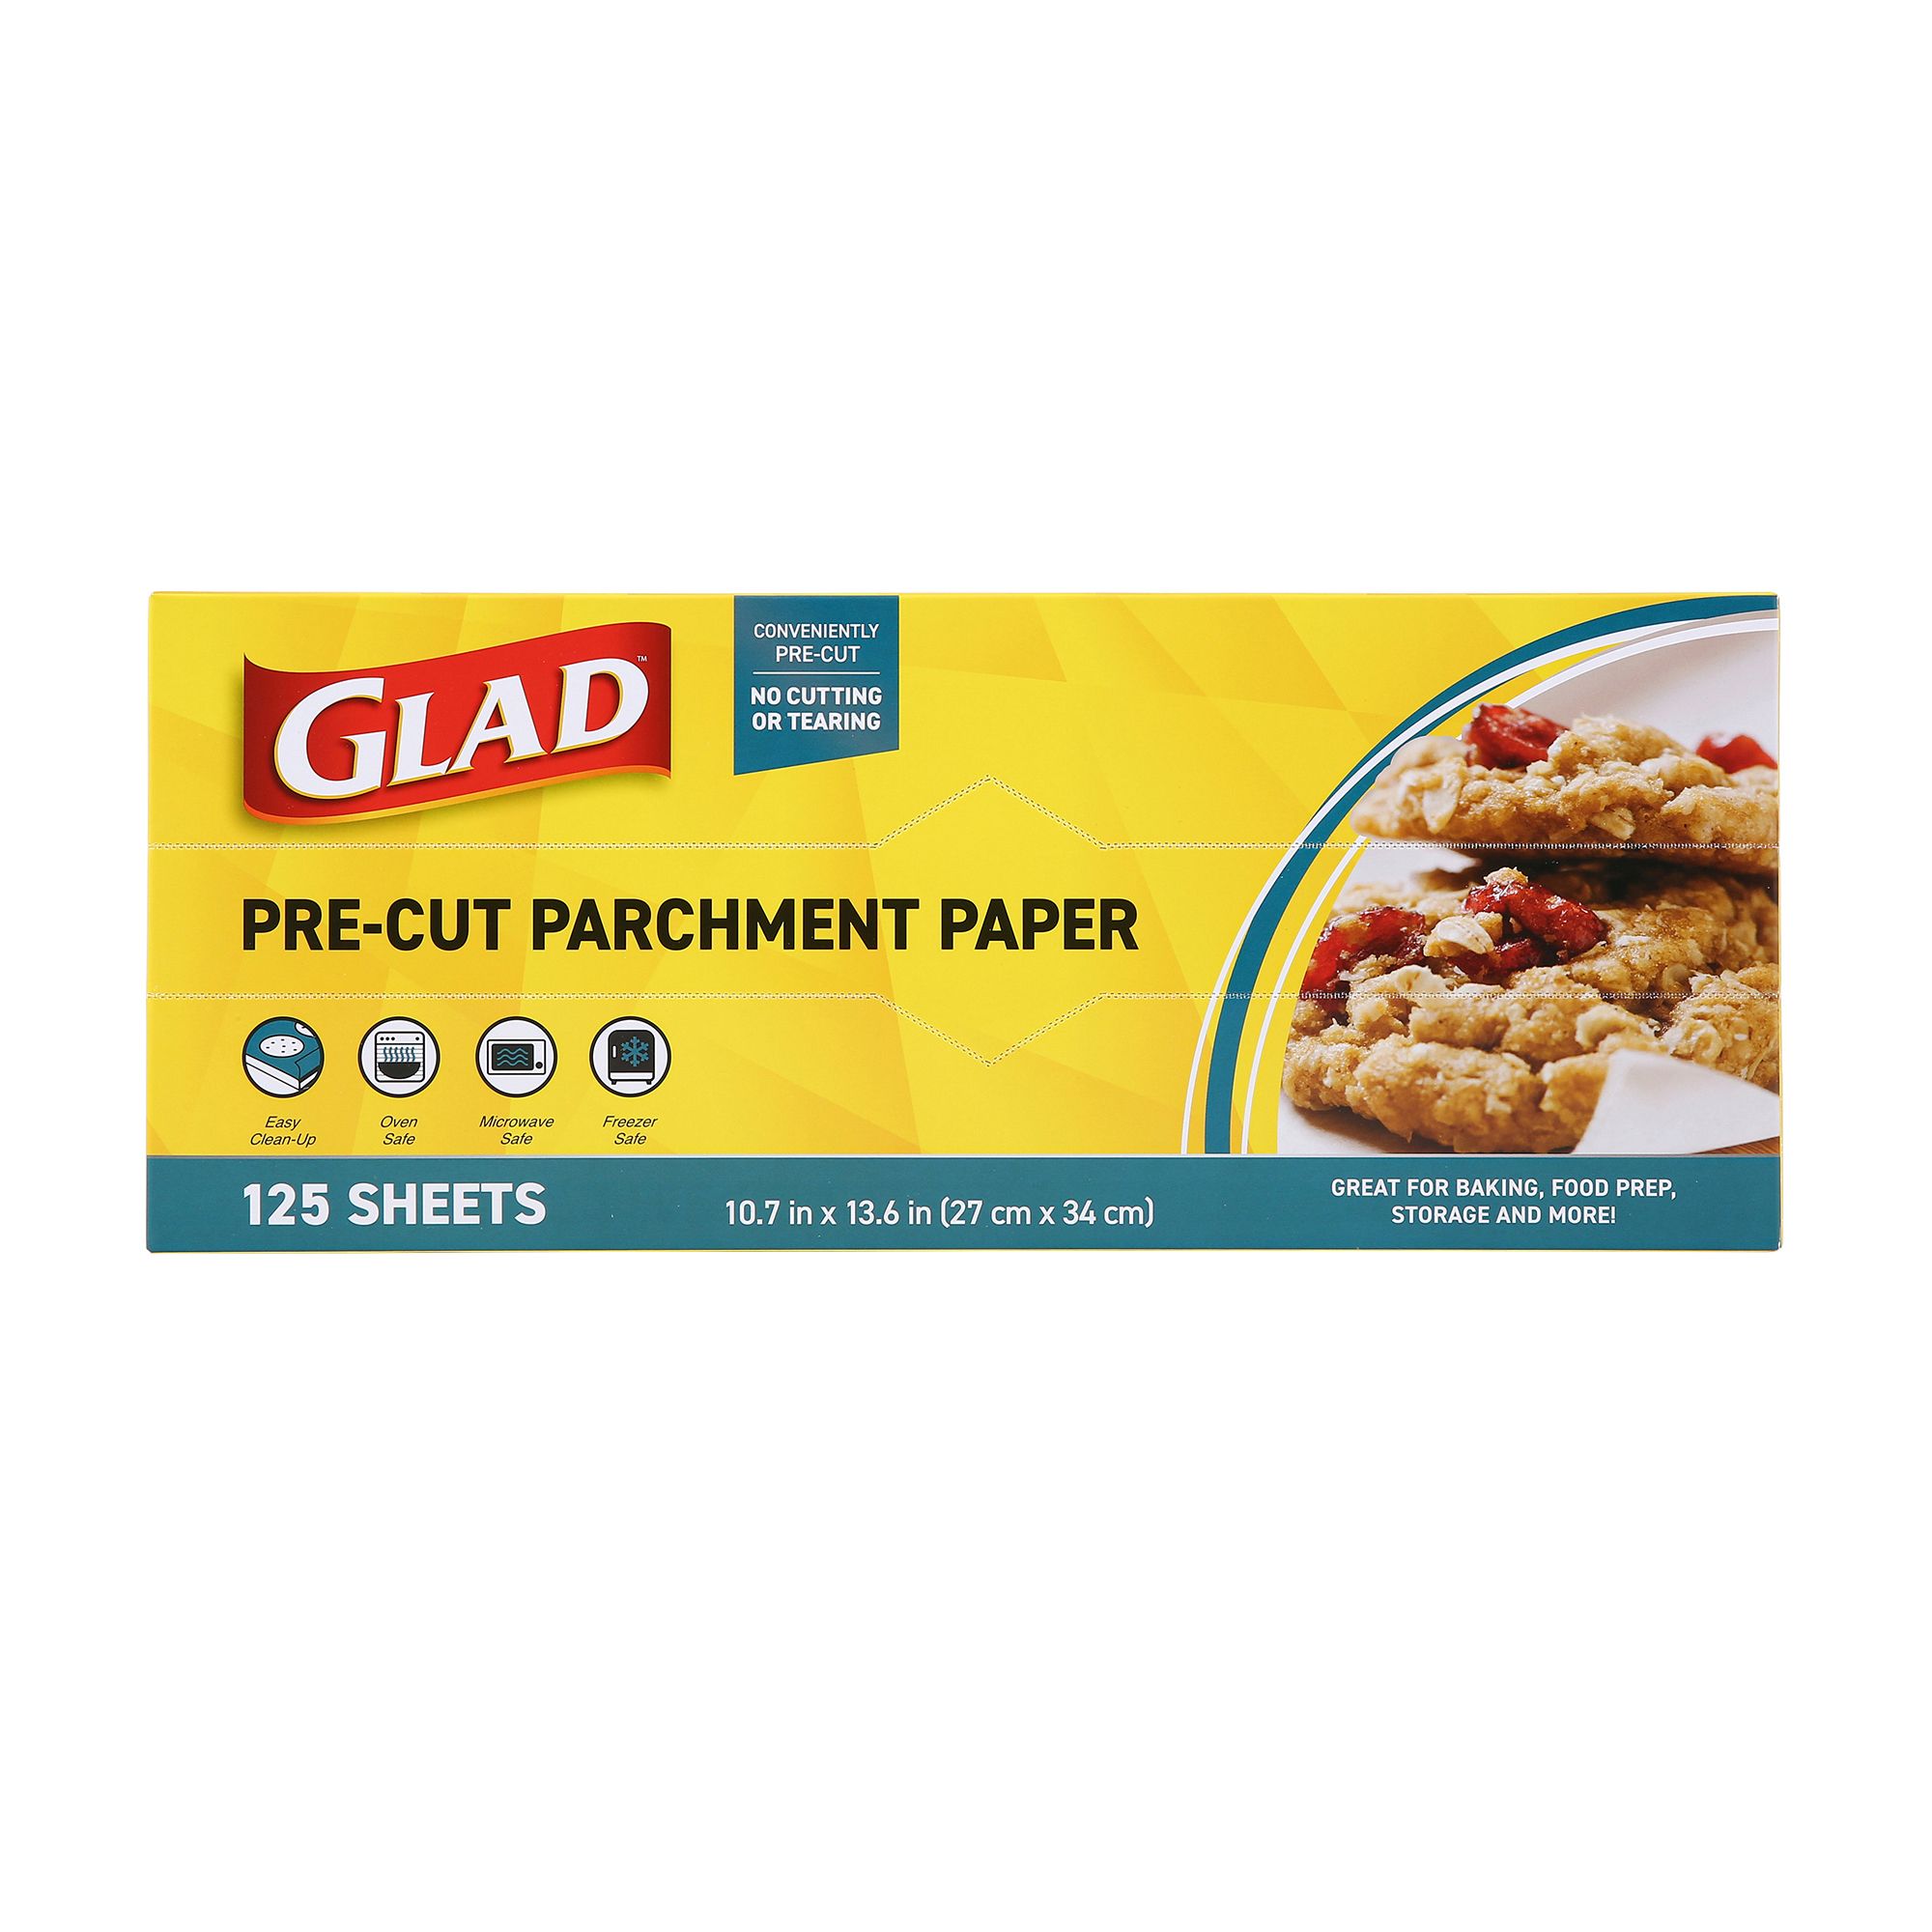 Glad Pre-Cut Parchment Paper, 25-Count